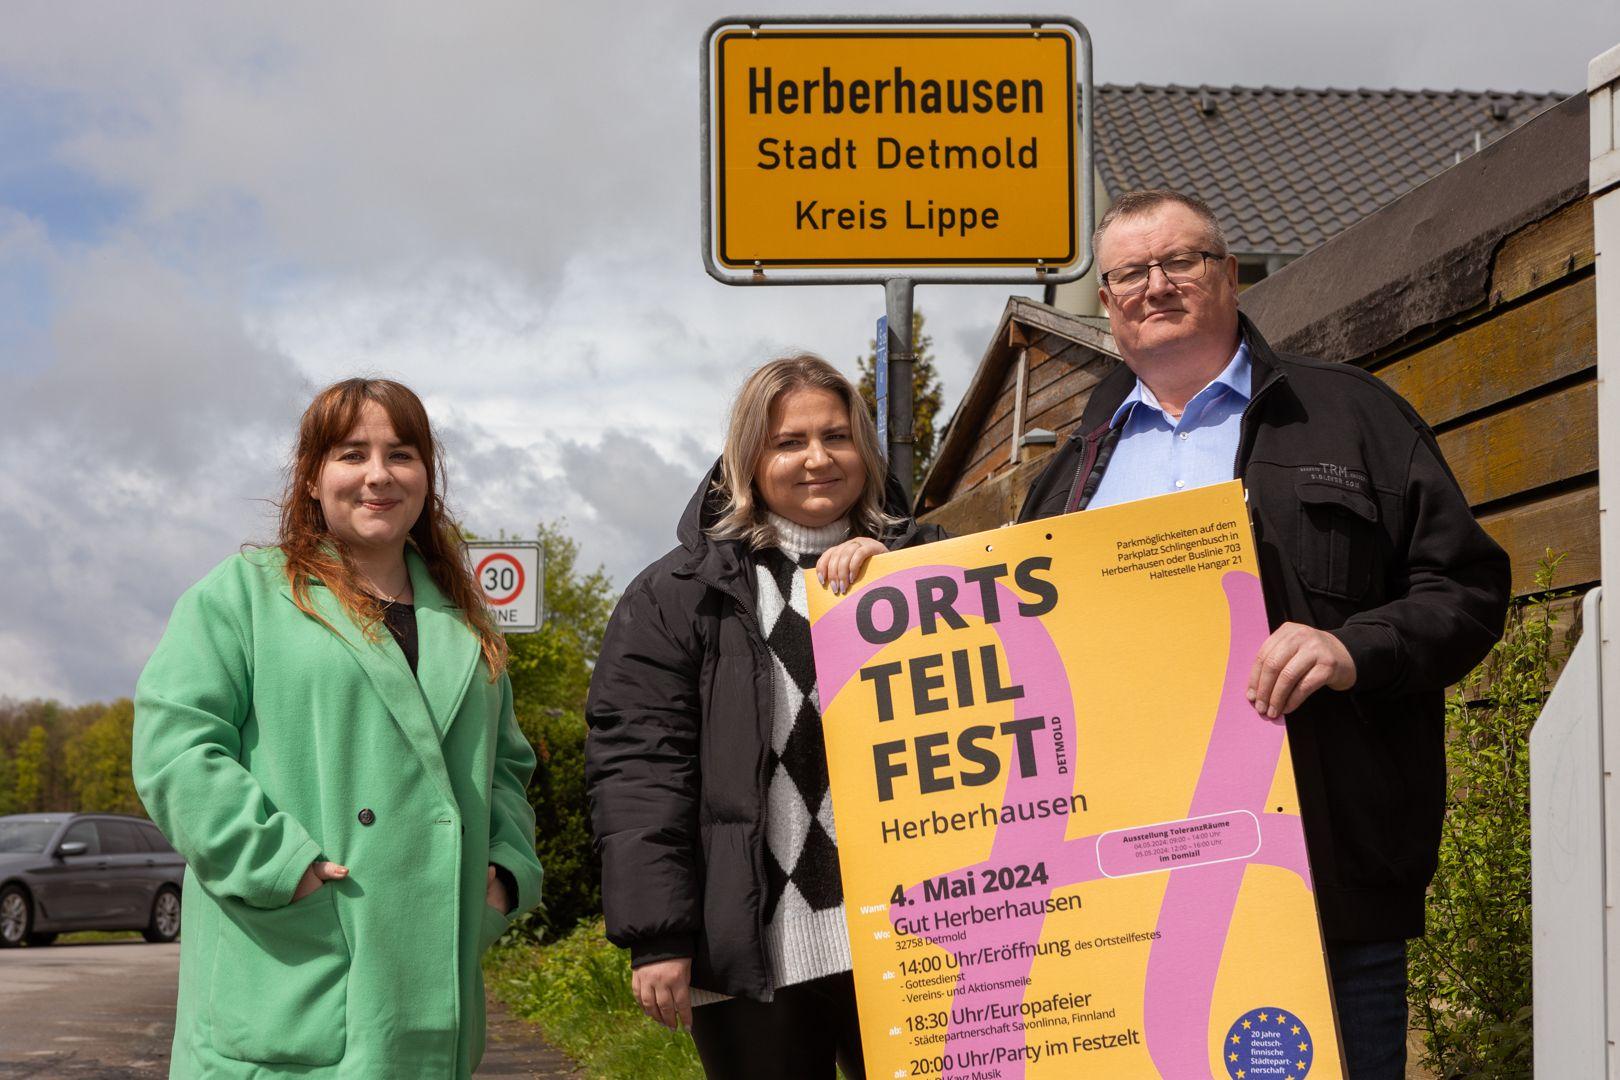 Herberhausen Ortsteilfest 2023: Feiern in Detmold | Symbolbild